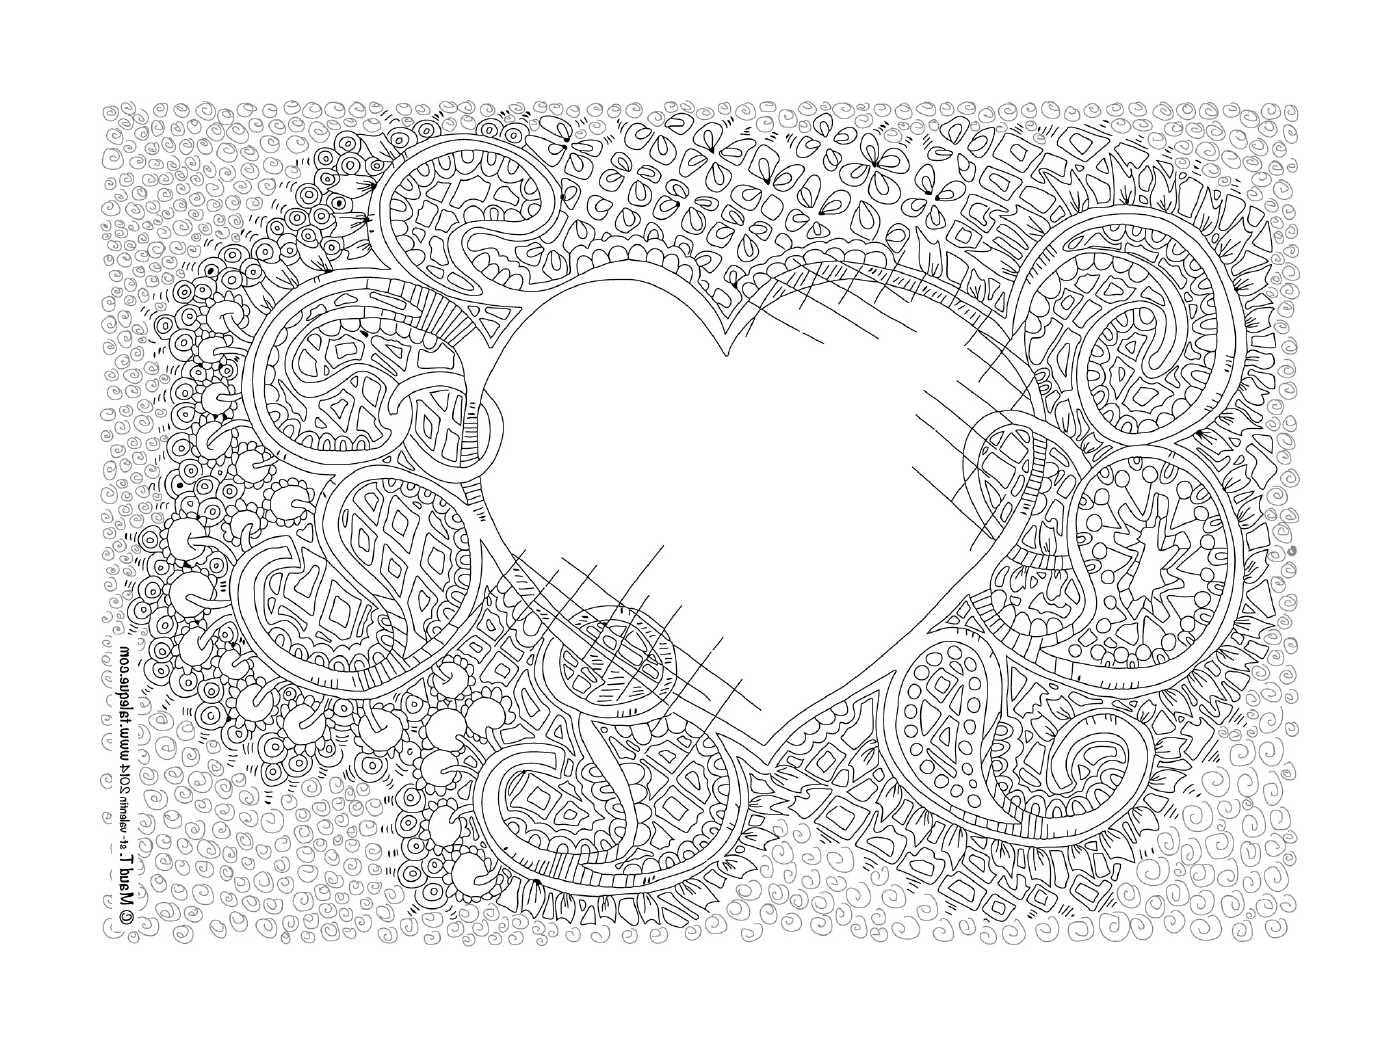  Um coração em forma de mandala com um motivo floral 